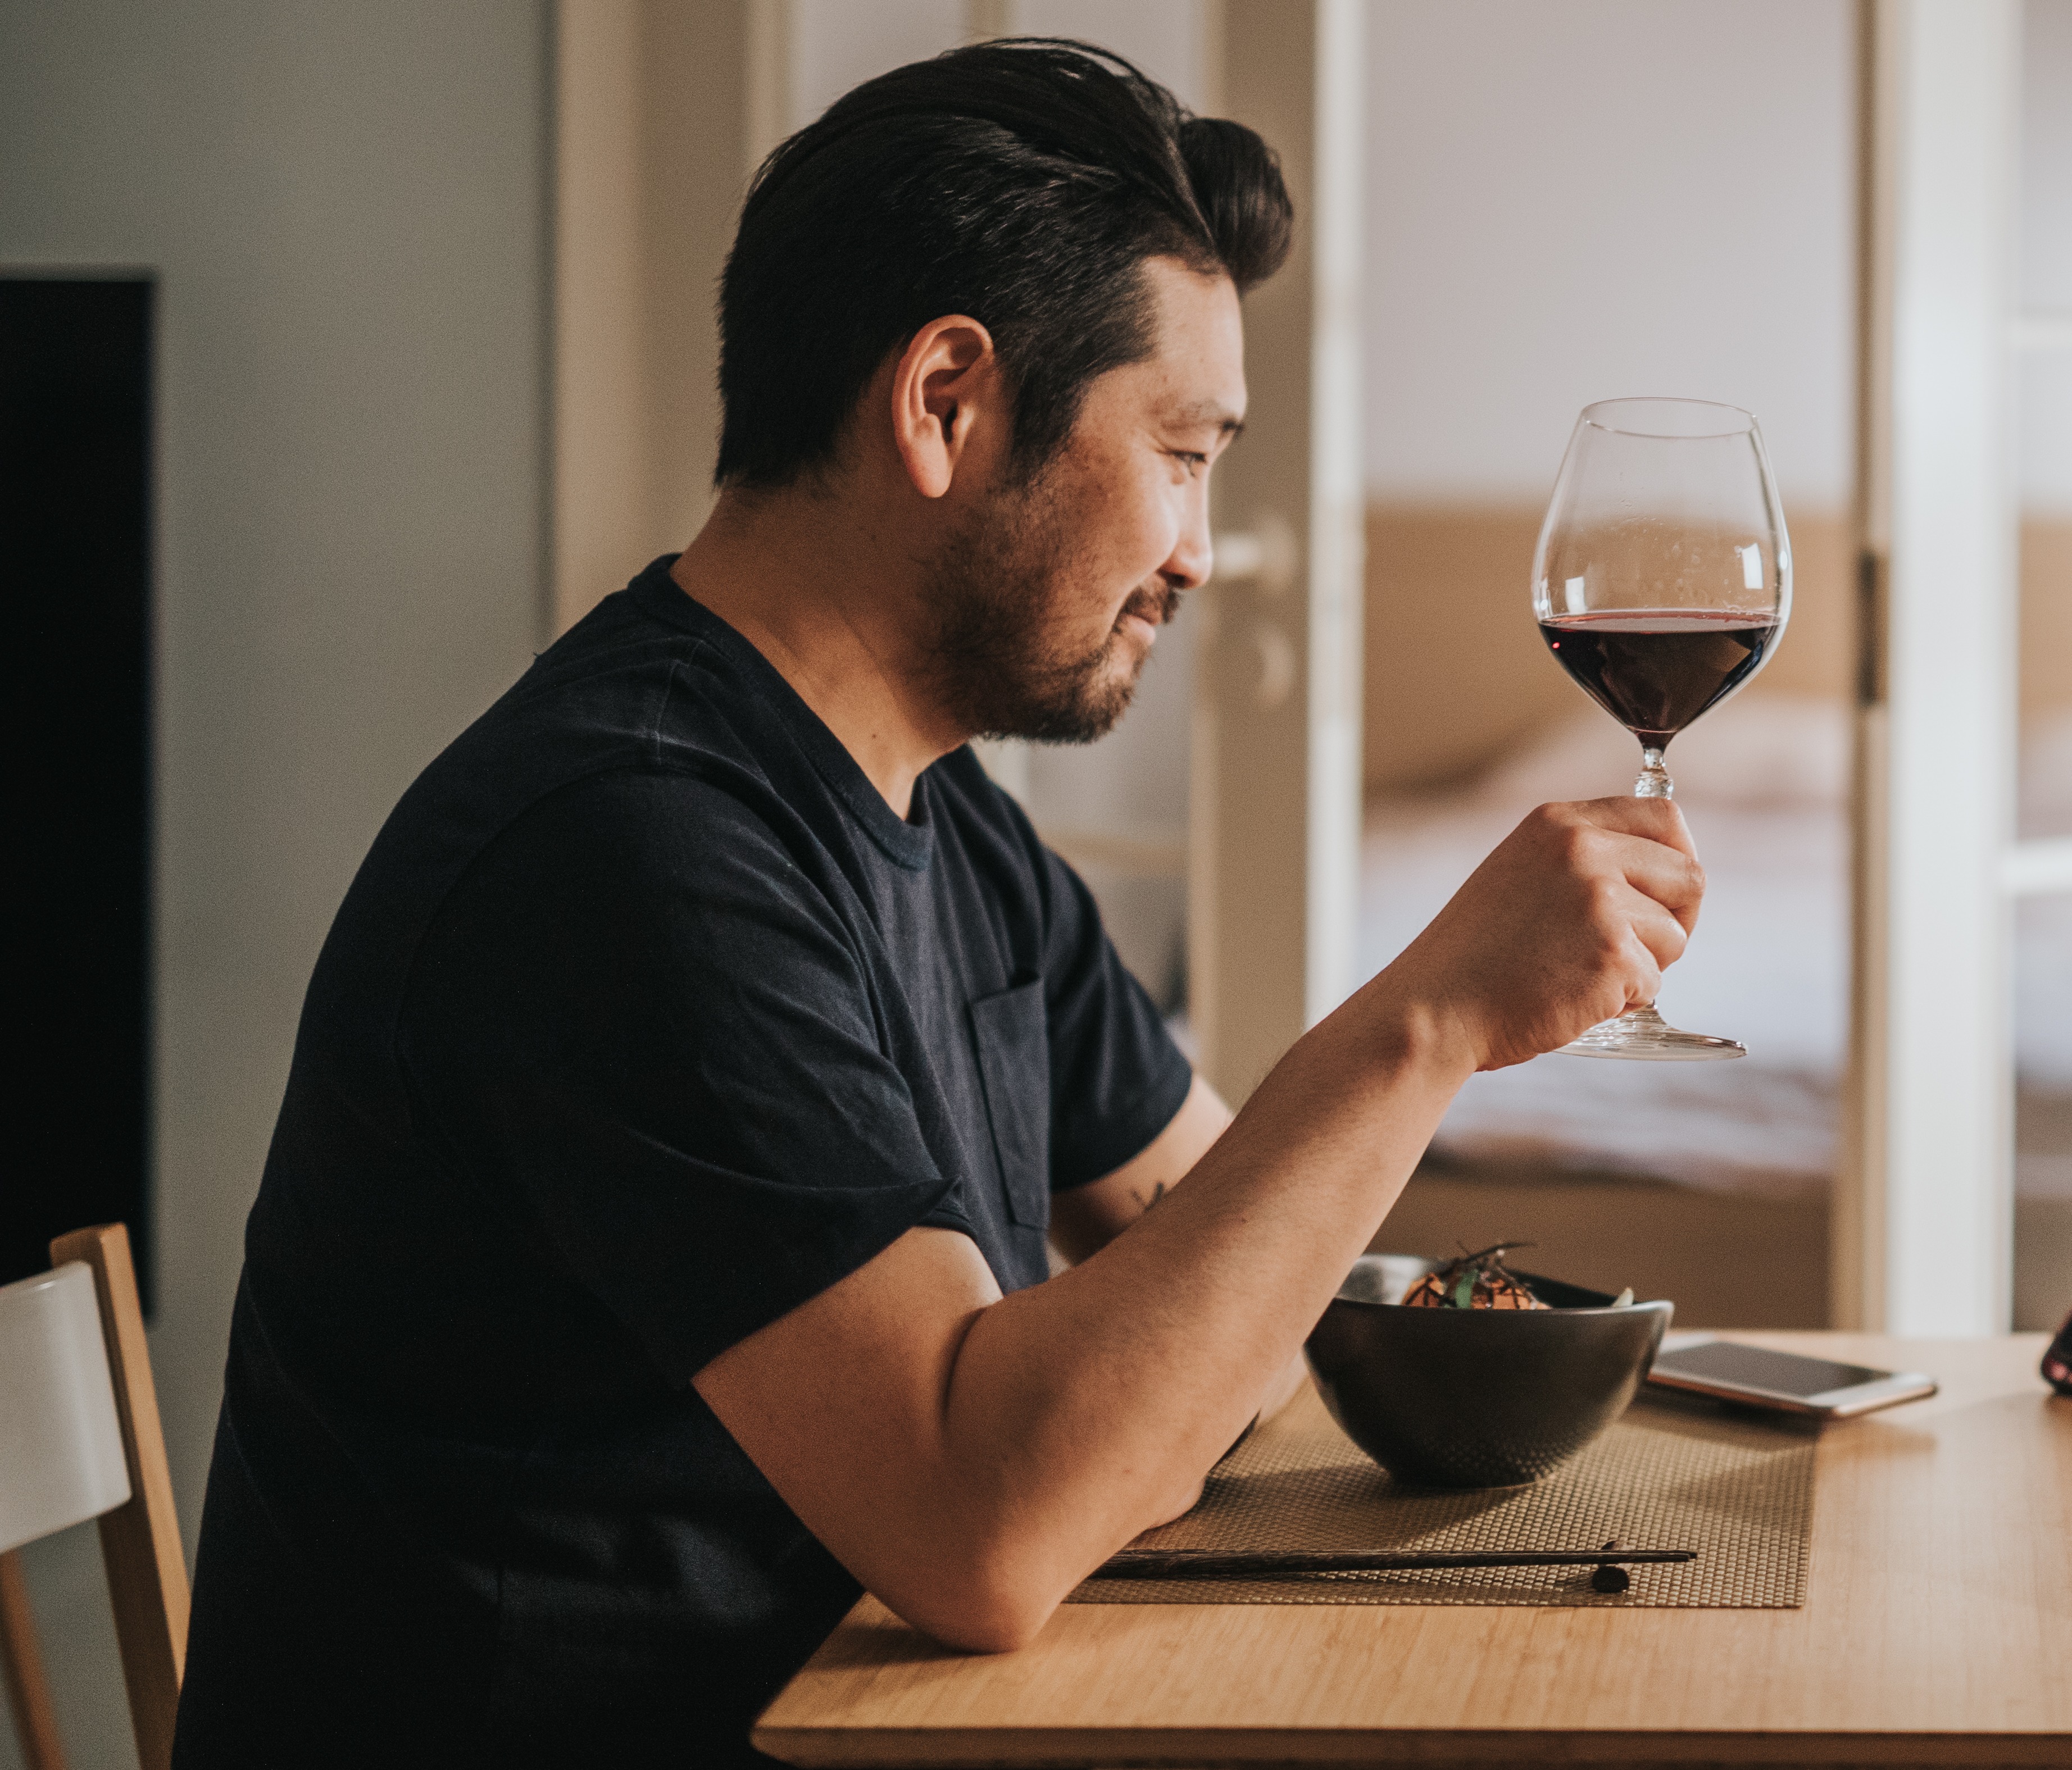 Das Trinken von Wein hilft Ihnen möglicherweise, sich zu entspannen, kann aber dazu führen, dass Sie am nächsten Tag erschöpft sind